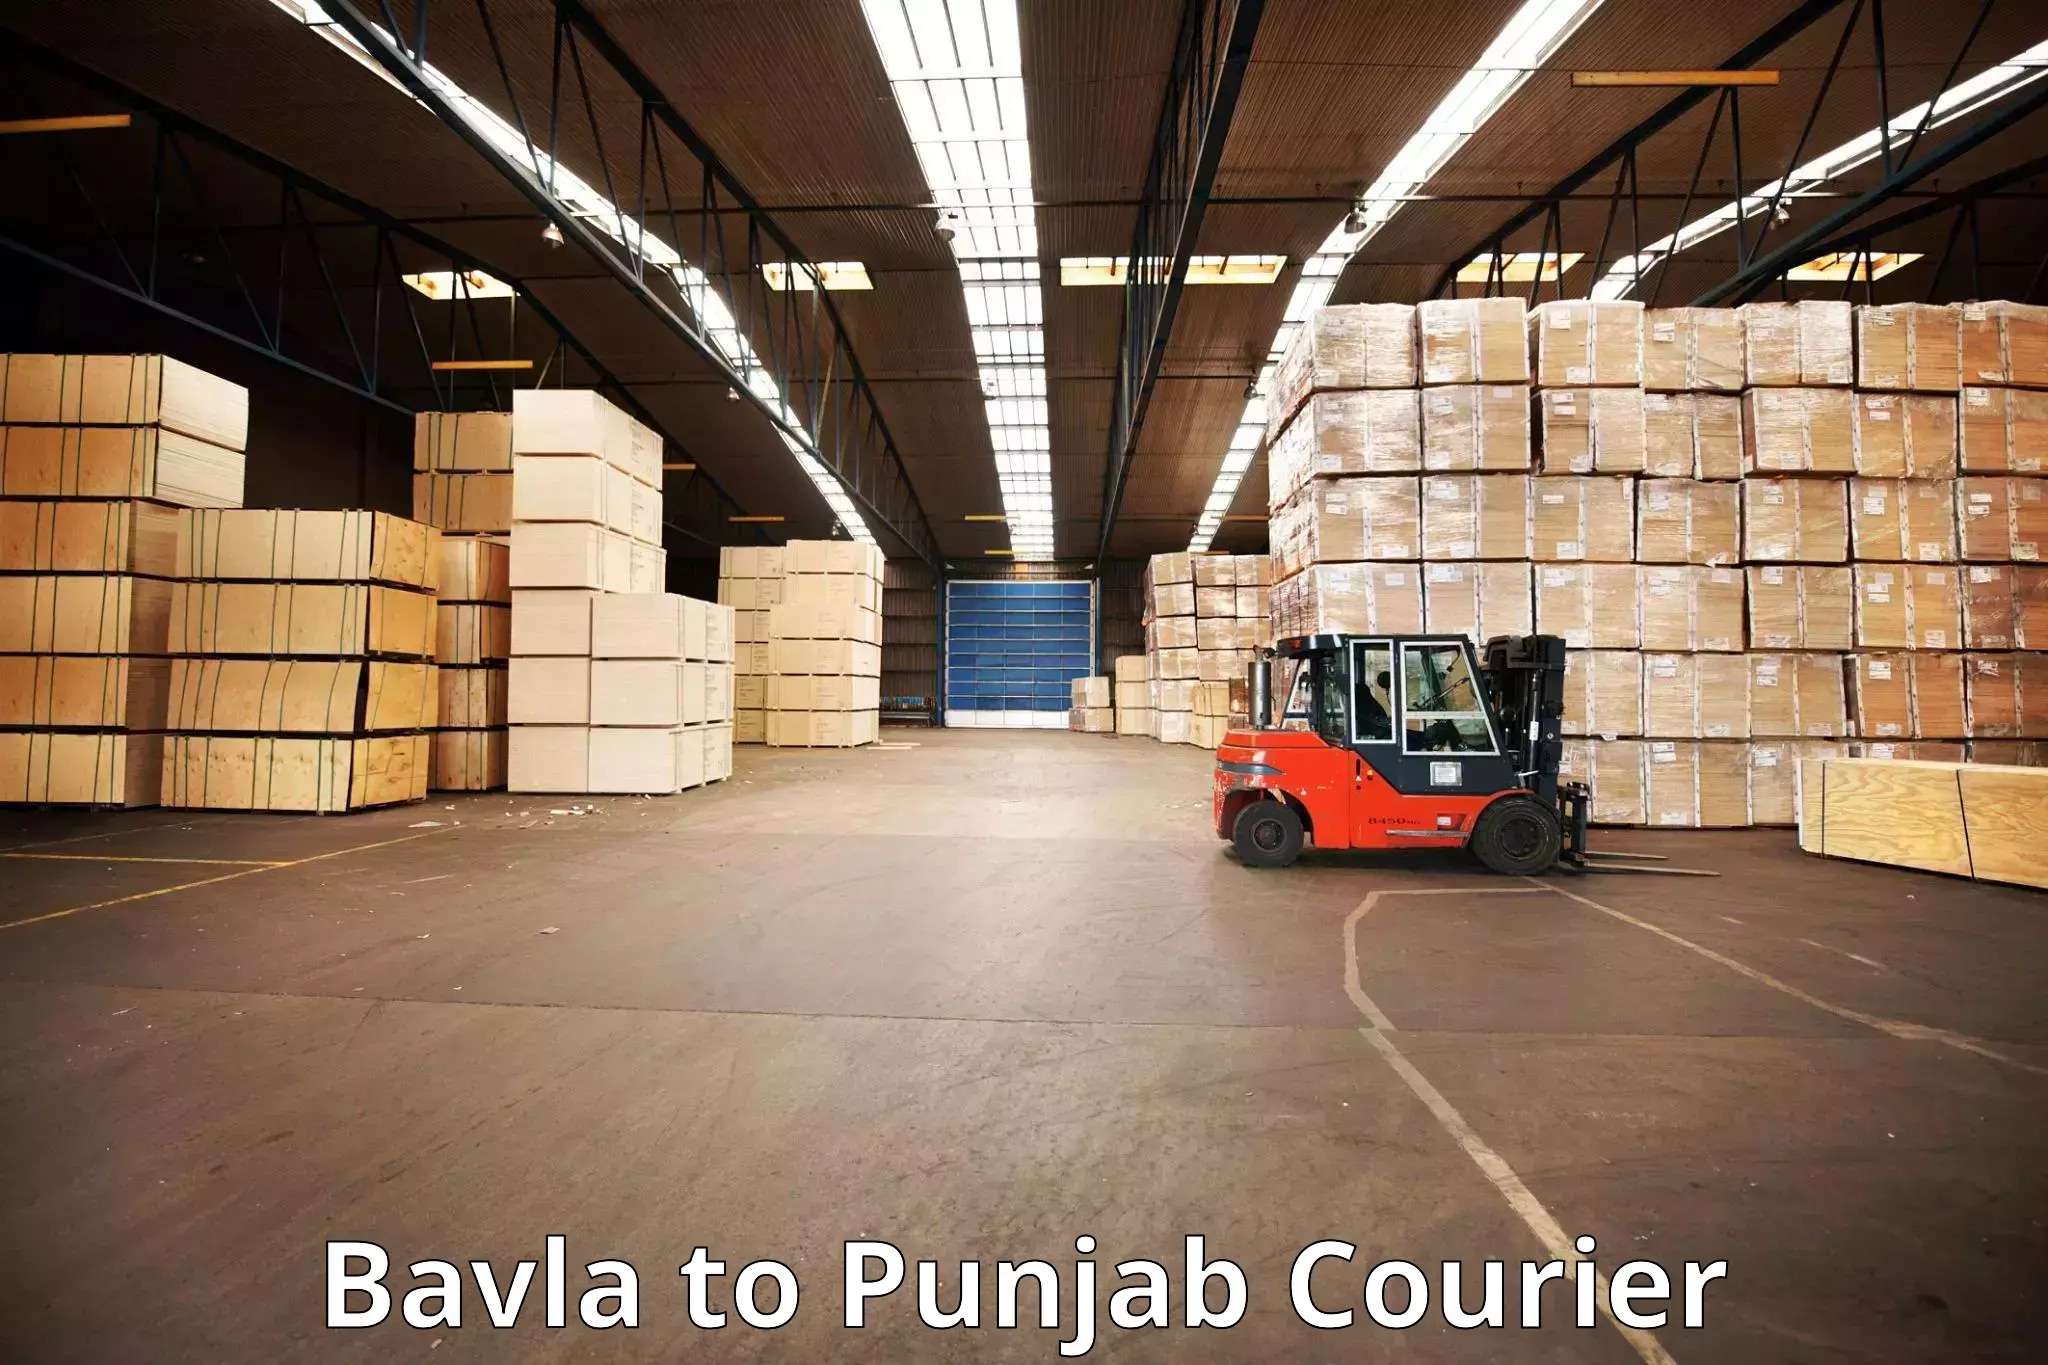 Luggage shipping planner Bavla to Central University of Punjab Bathinda